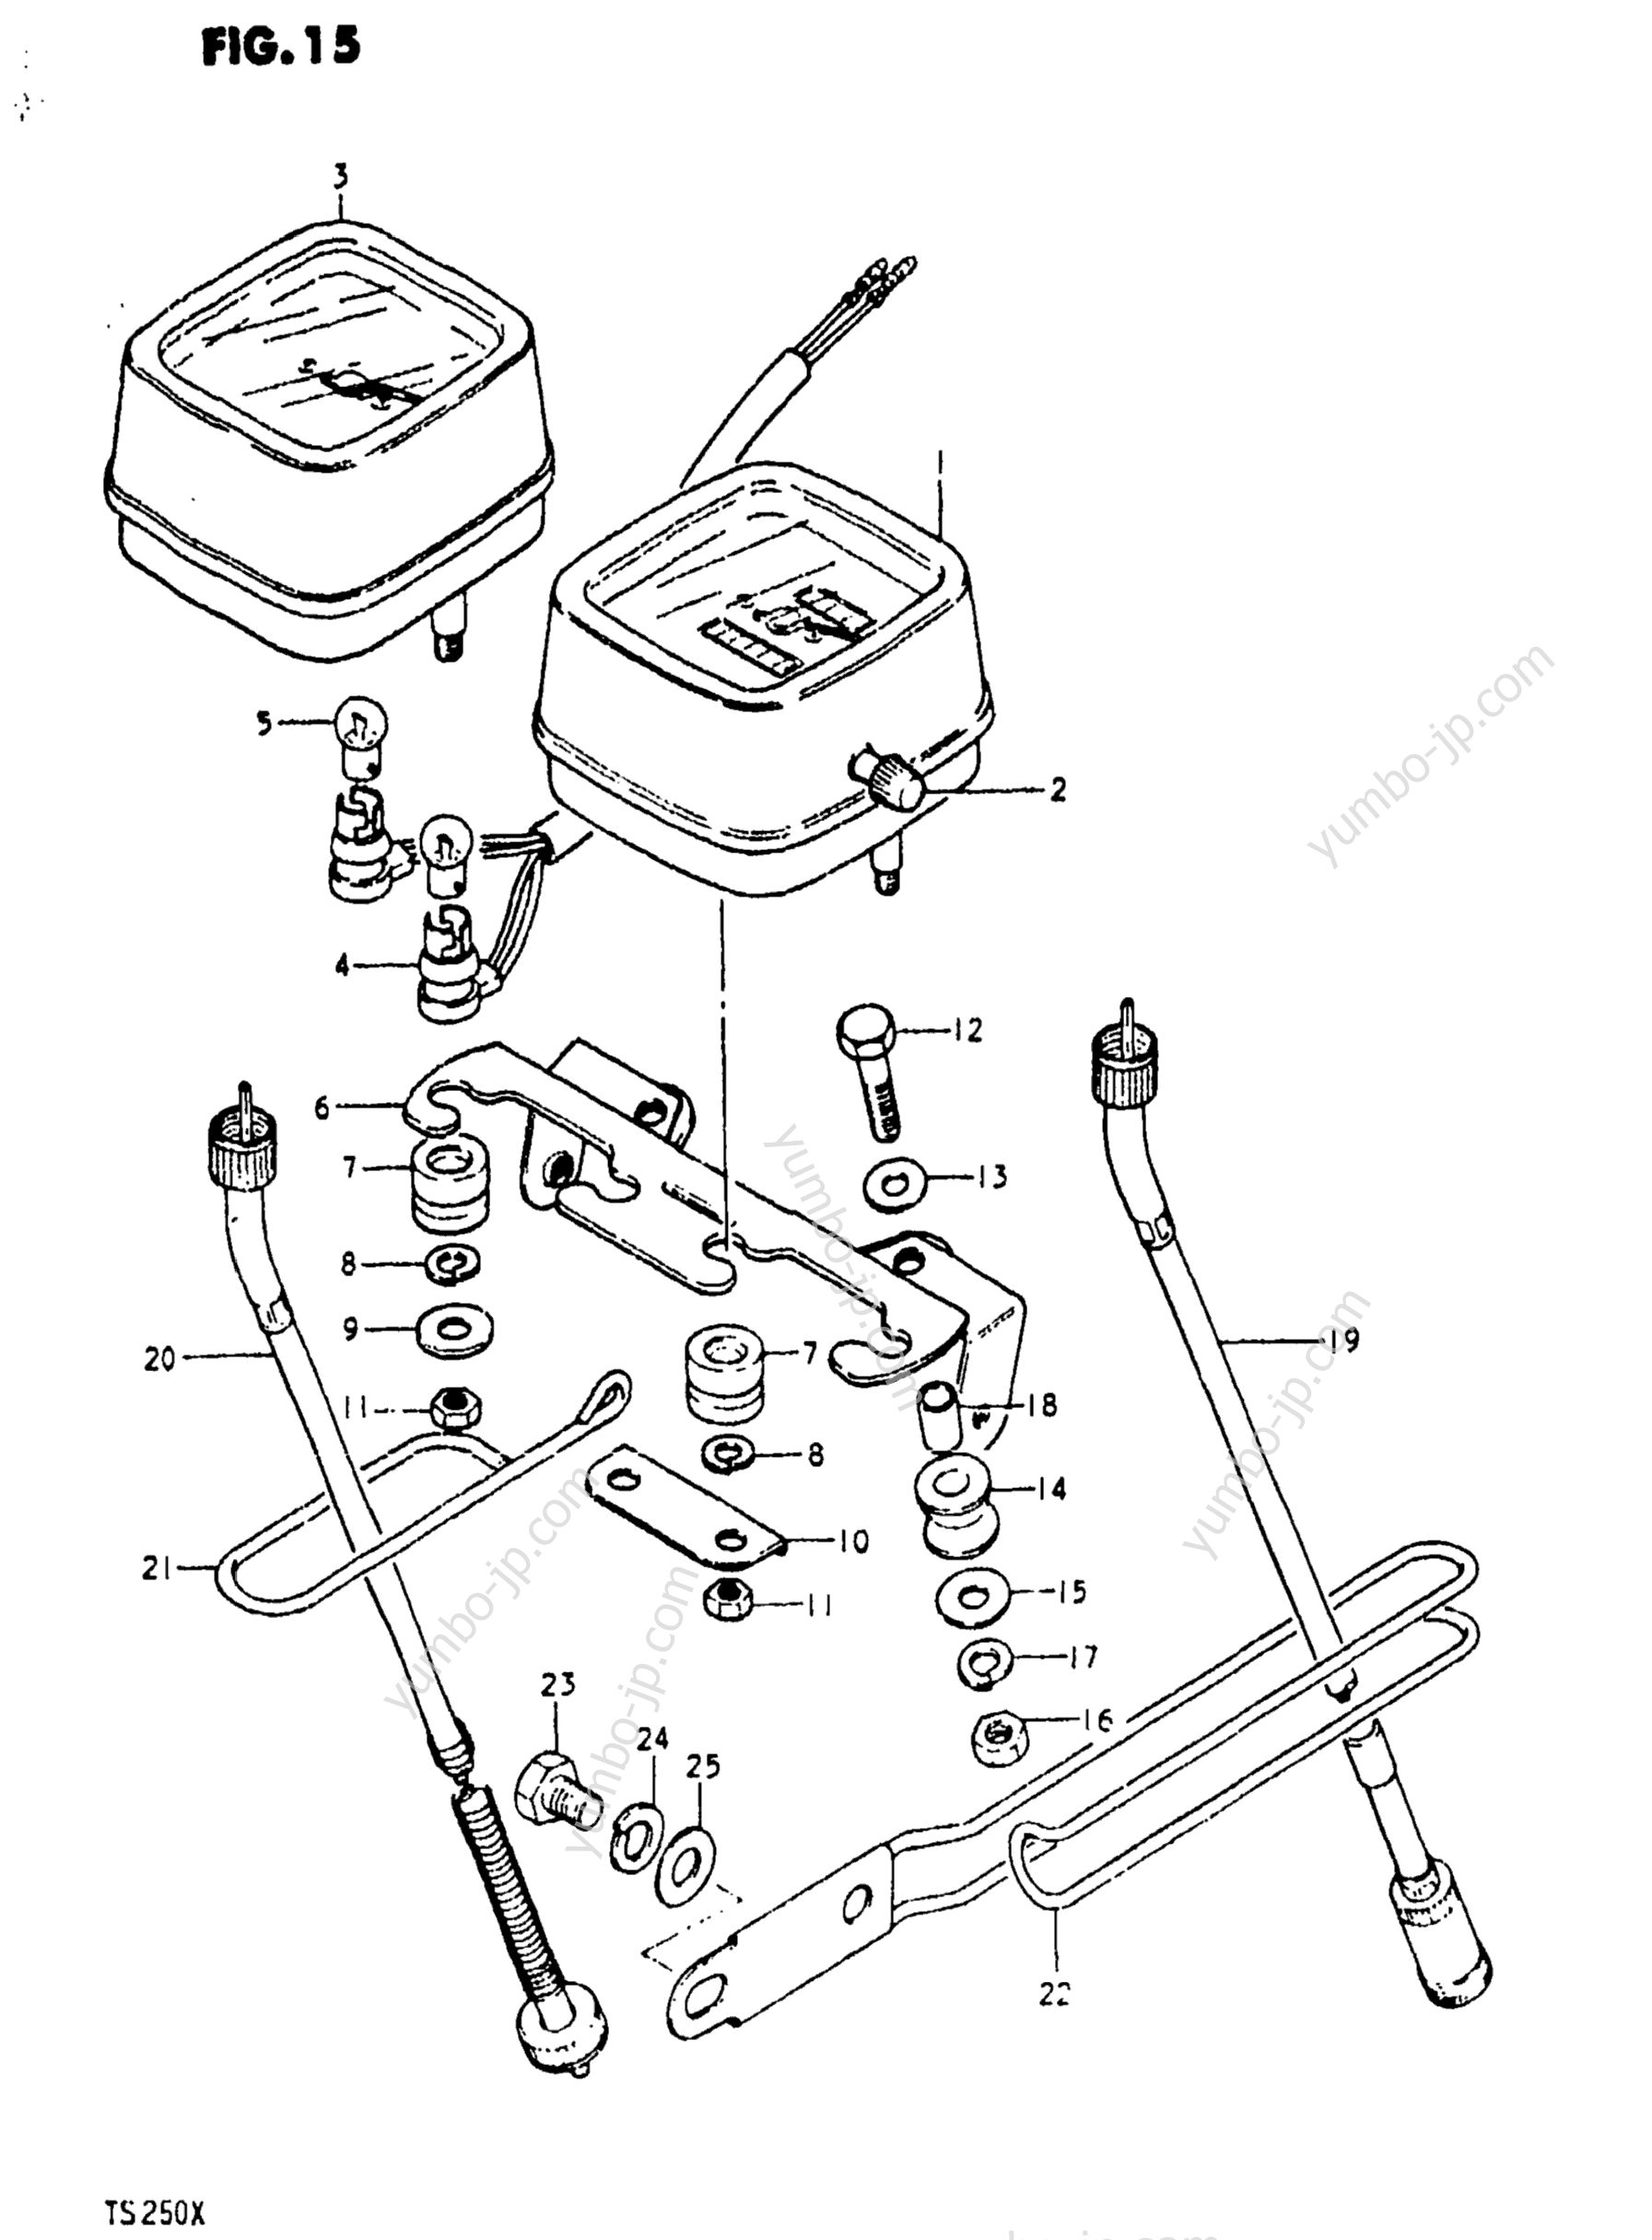 Speedometer - Tachometer for motorcycles SUZUKI TS250 1981 year